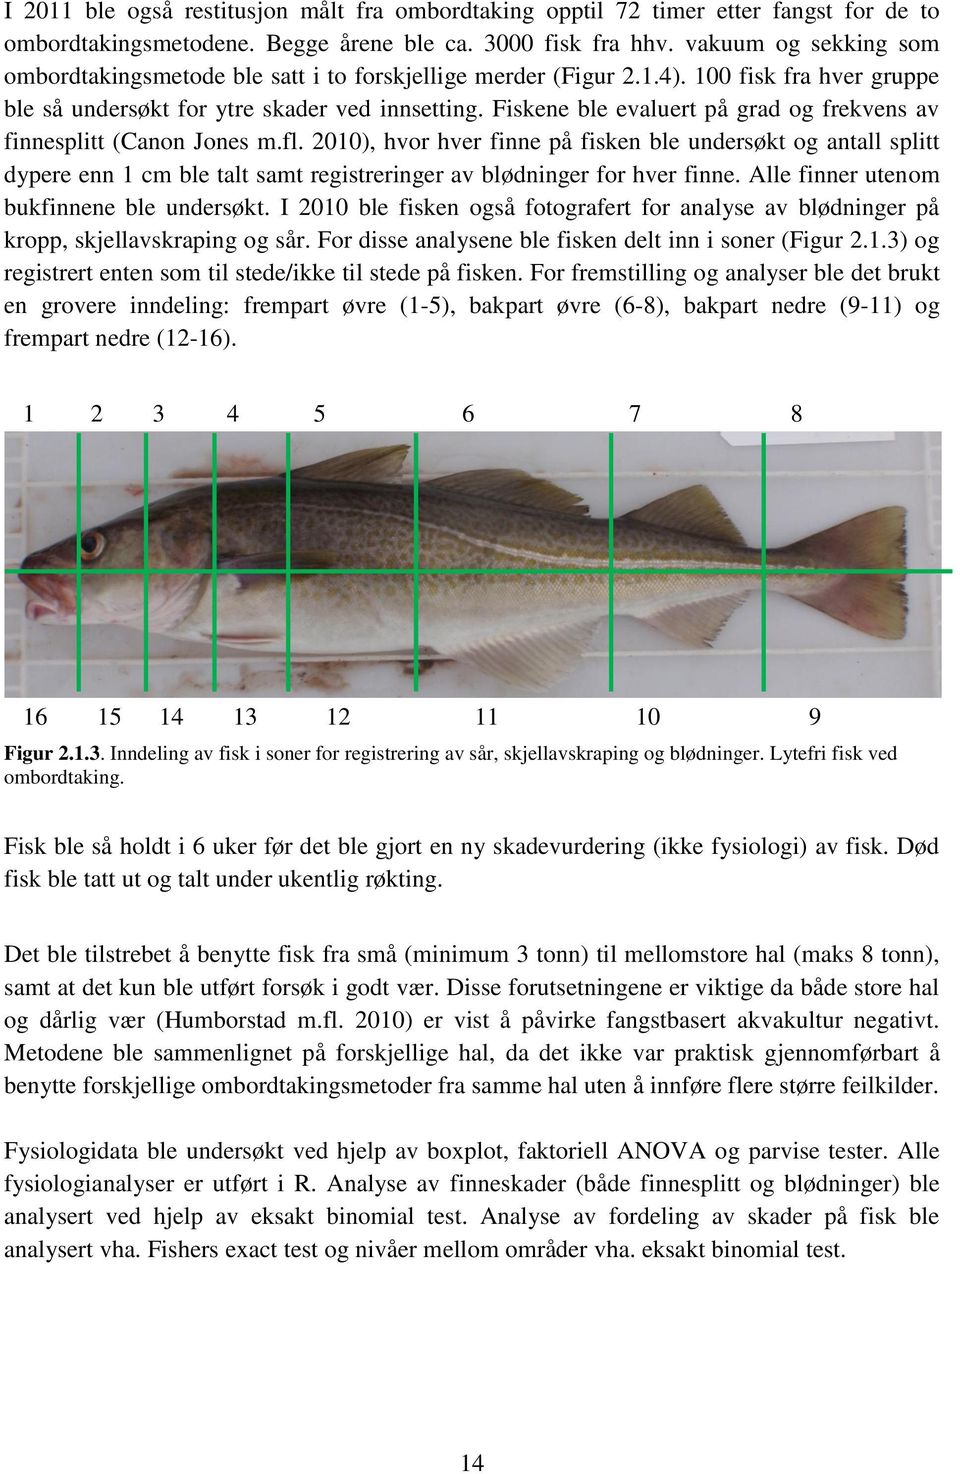 Fiskene ble evaluert på grad og frekvens av finnesplitt (Canon Jones m.fl.